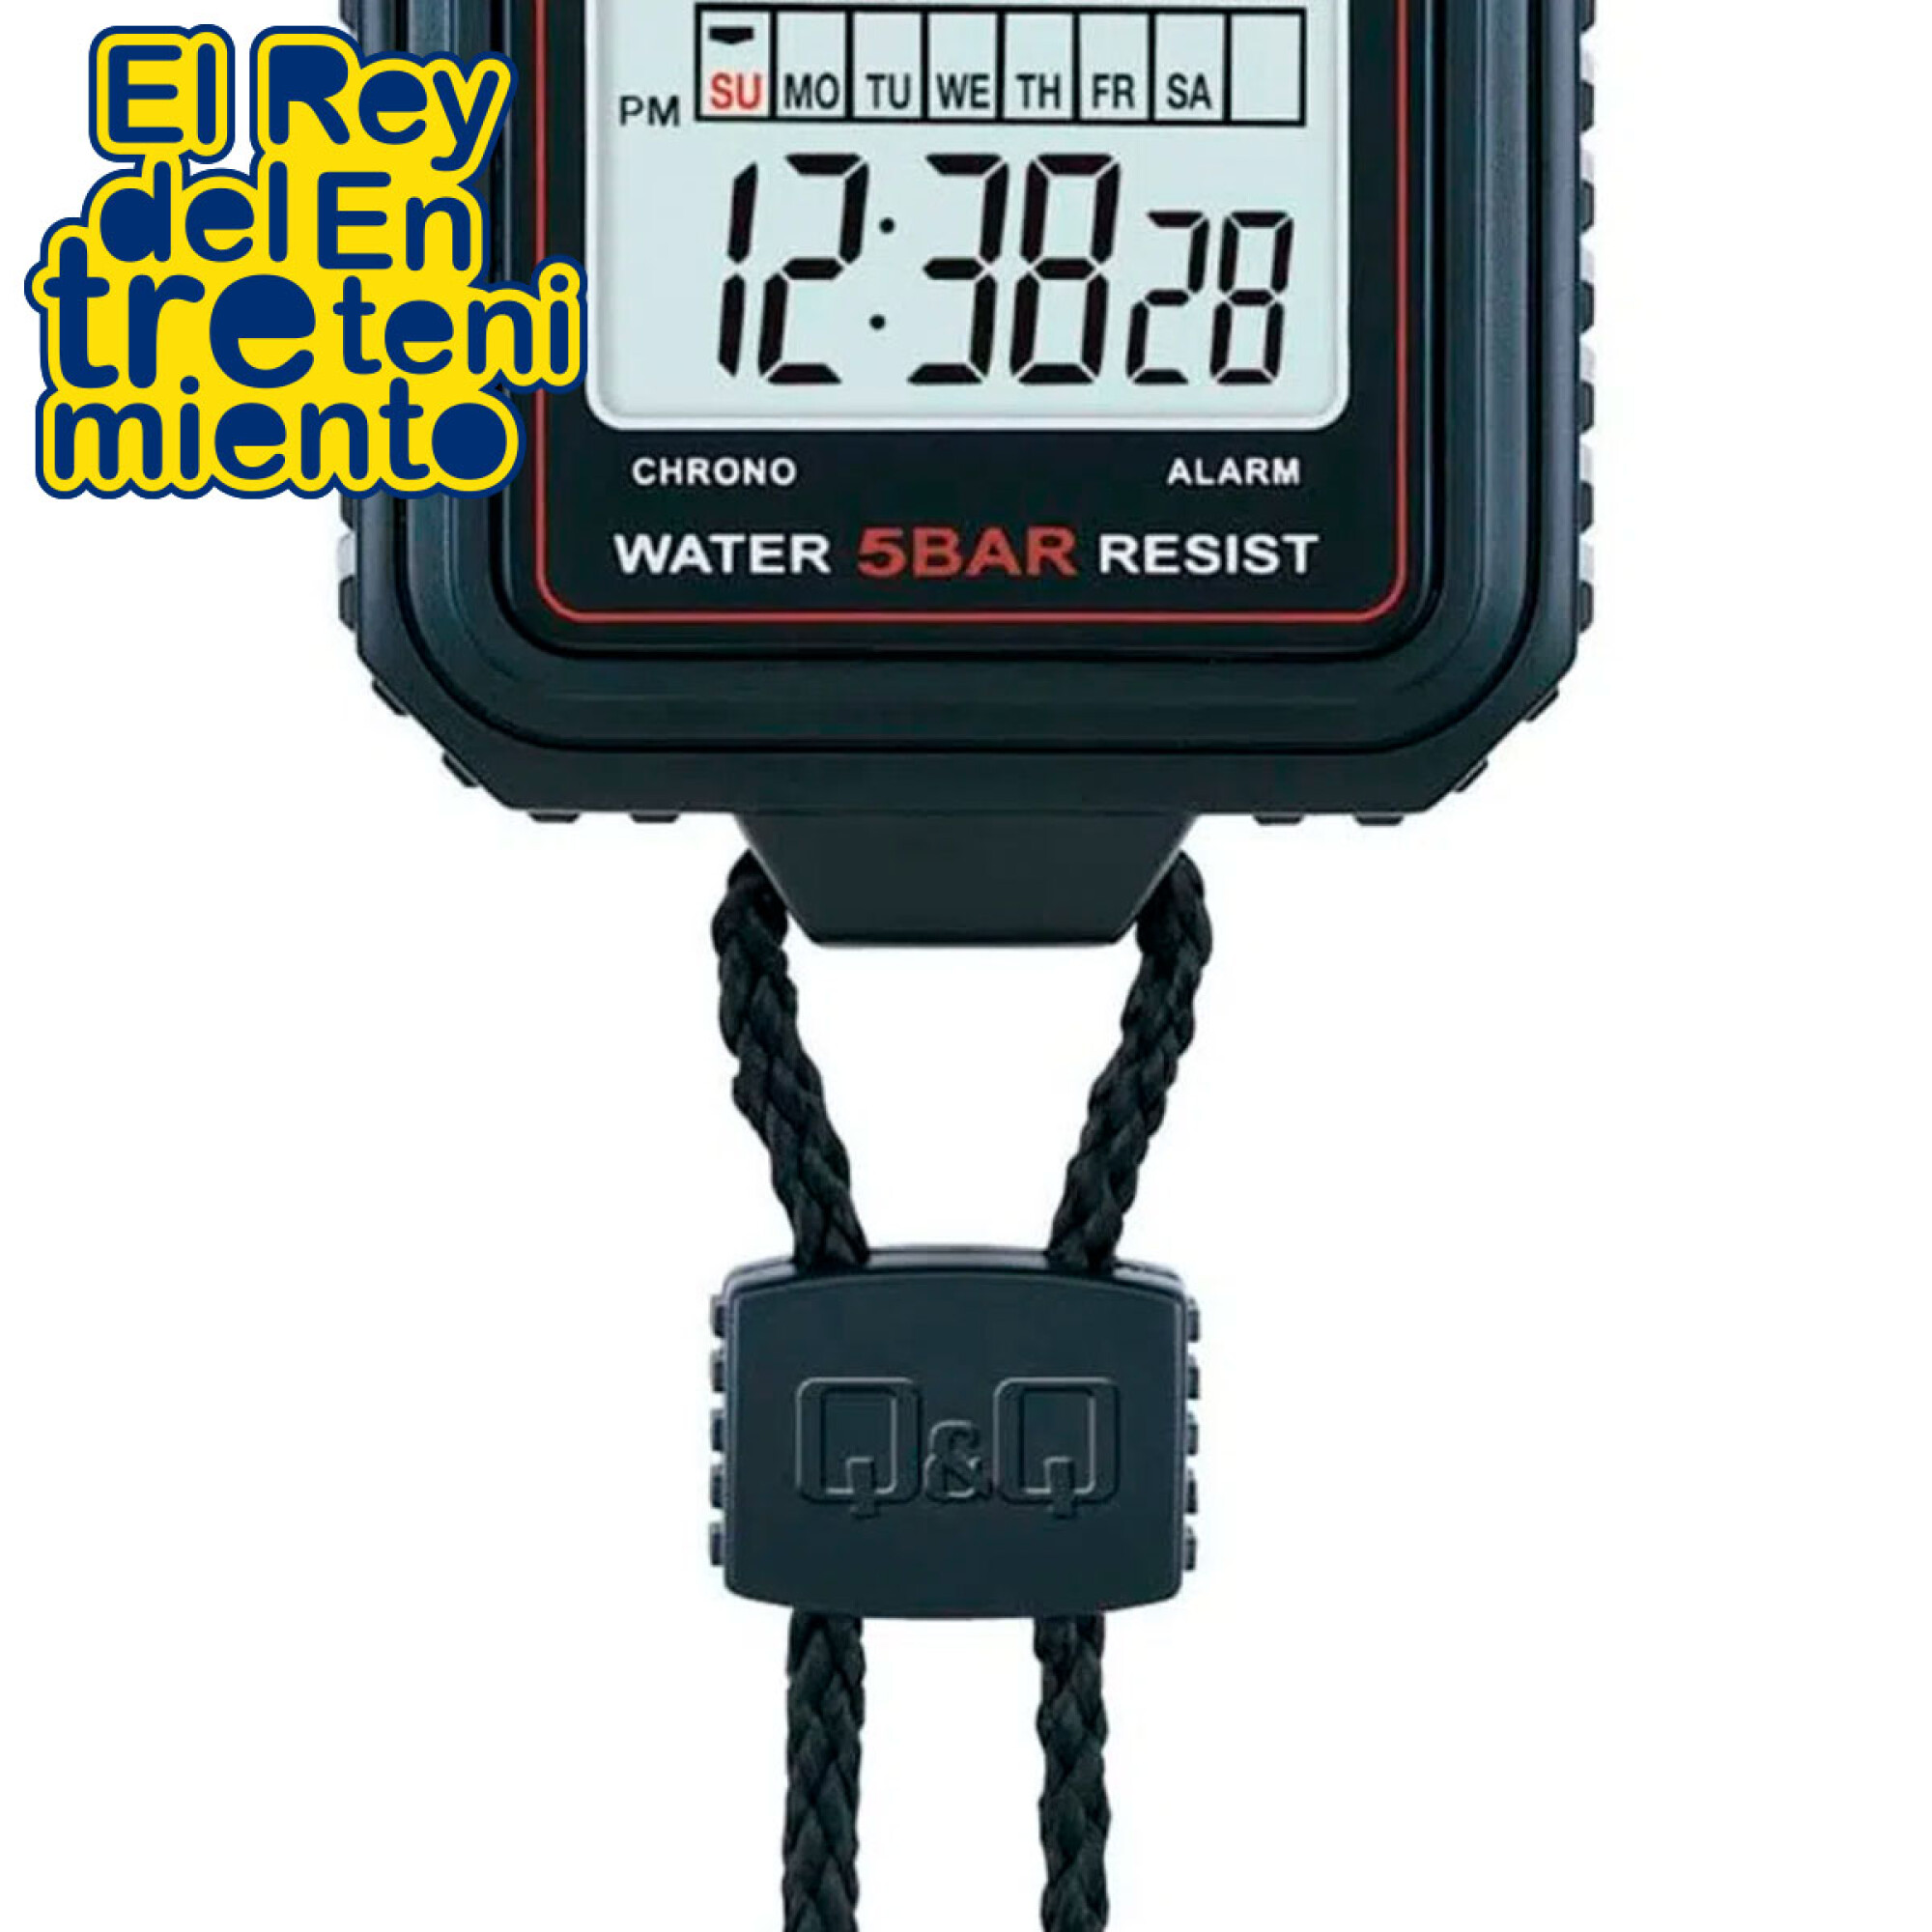 Cronómetro digital con pantalla grande, cronómetros deportivos con reloj  despertador natación